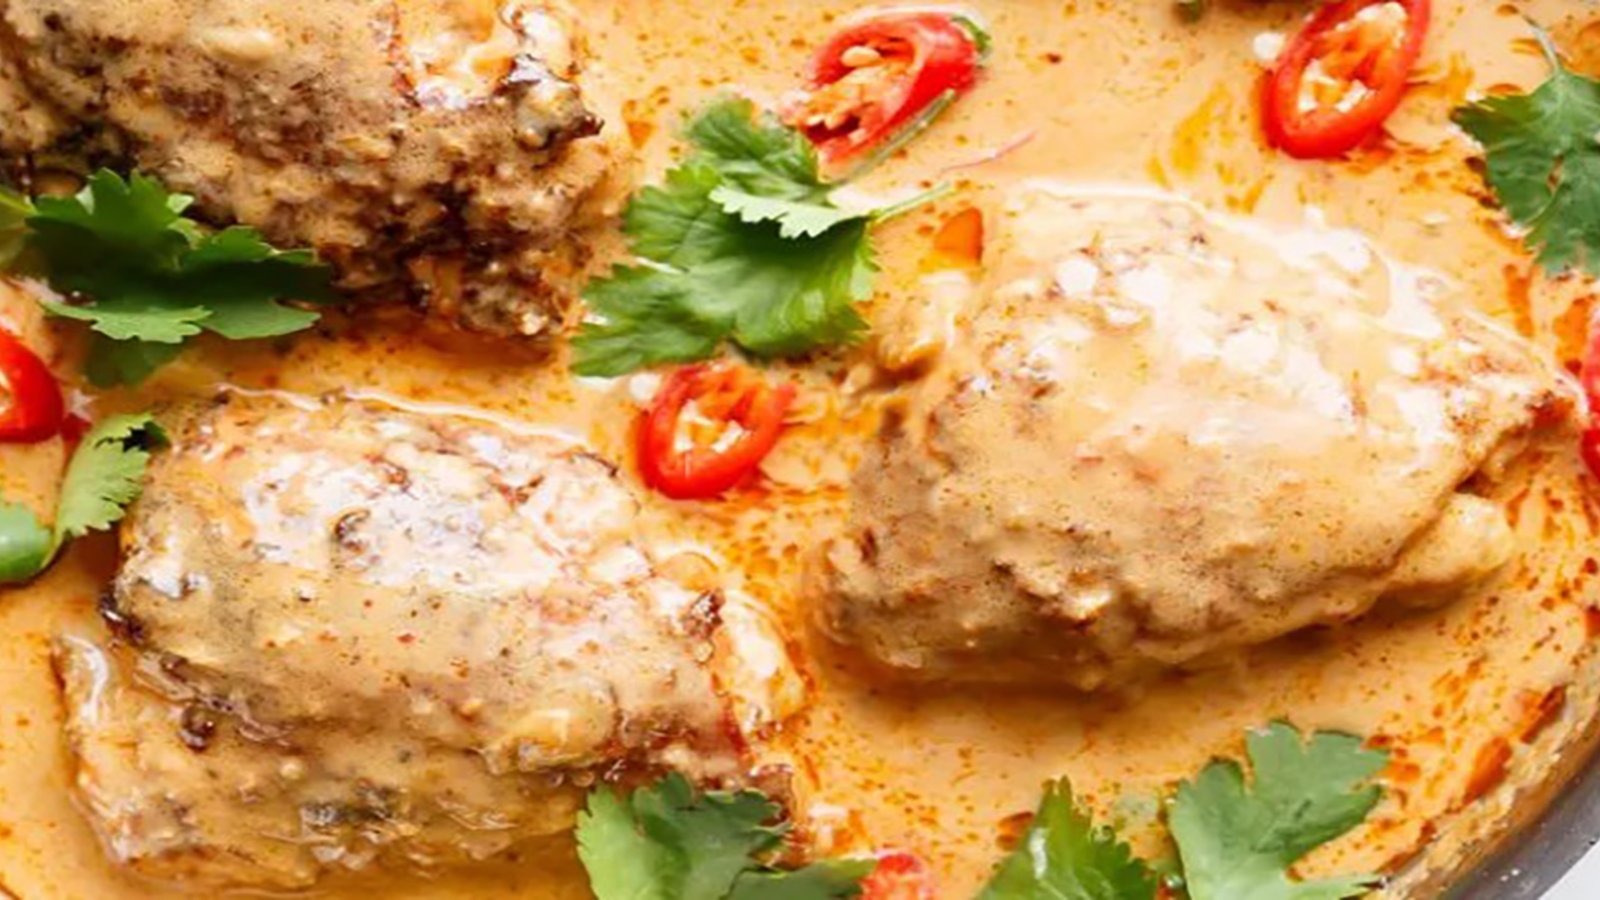 Poulet à la thaïe au curry rouge, laissez-vous charmer, car c'est tout un délice!